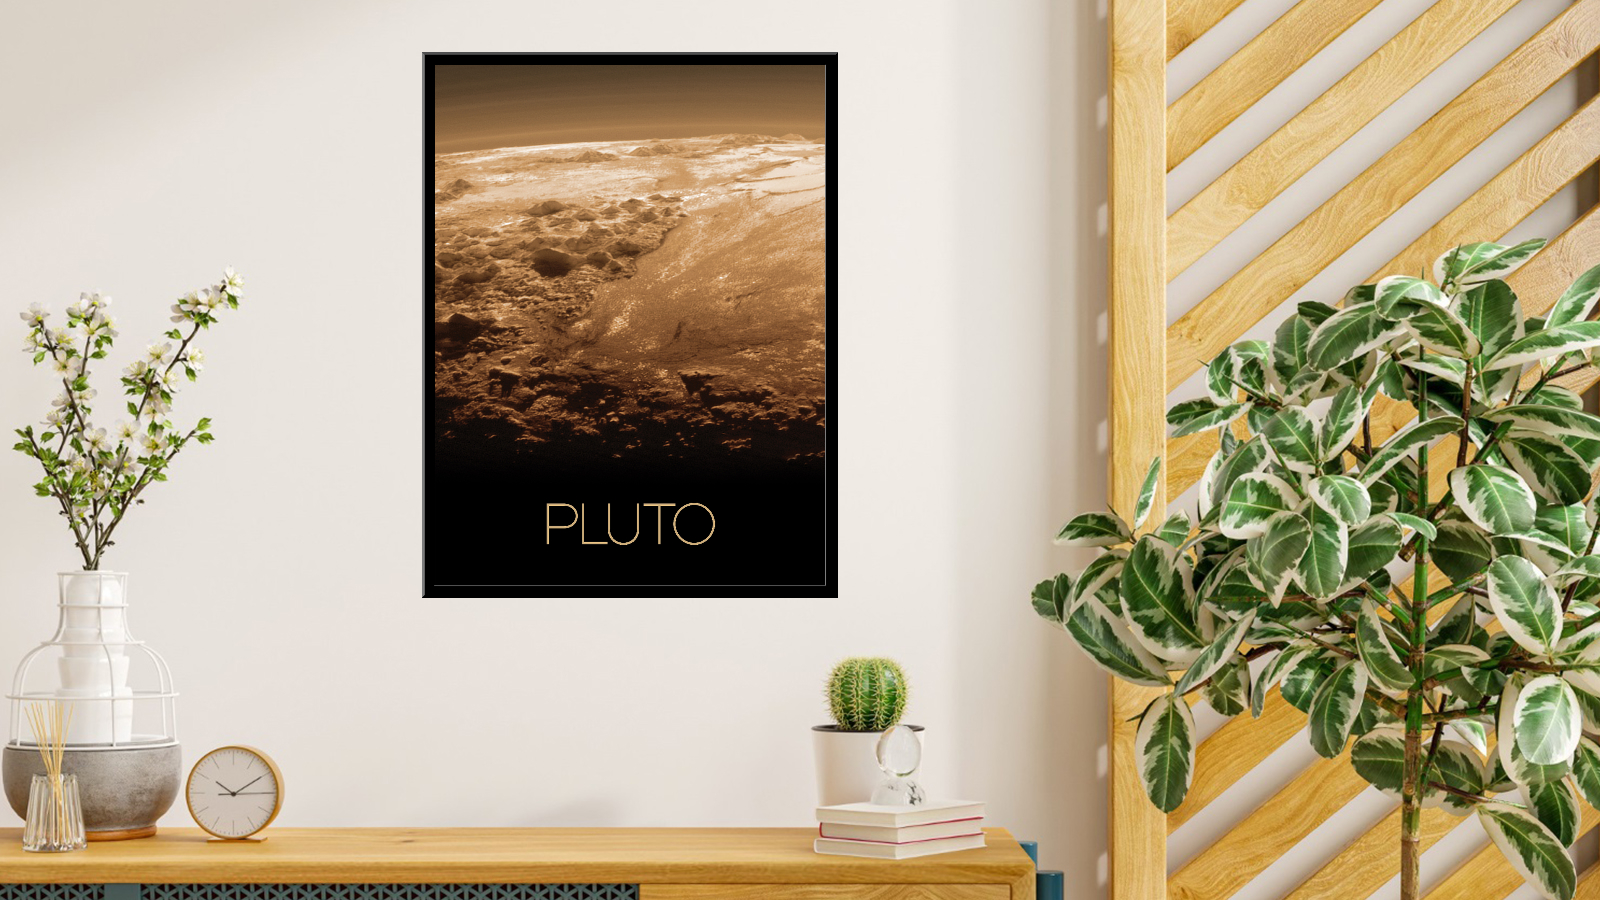 Pluton - 2